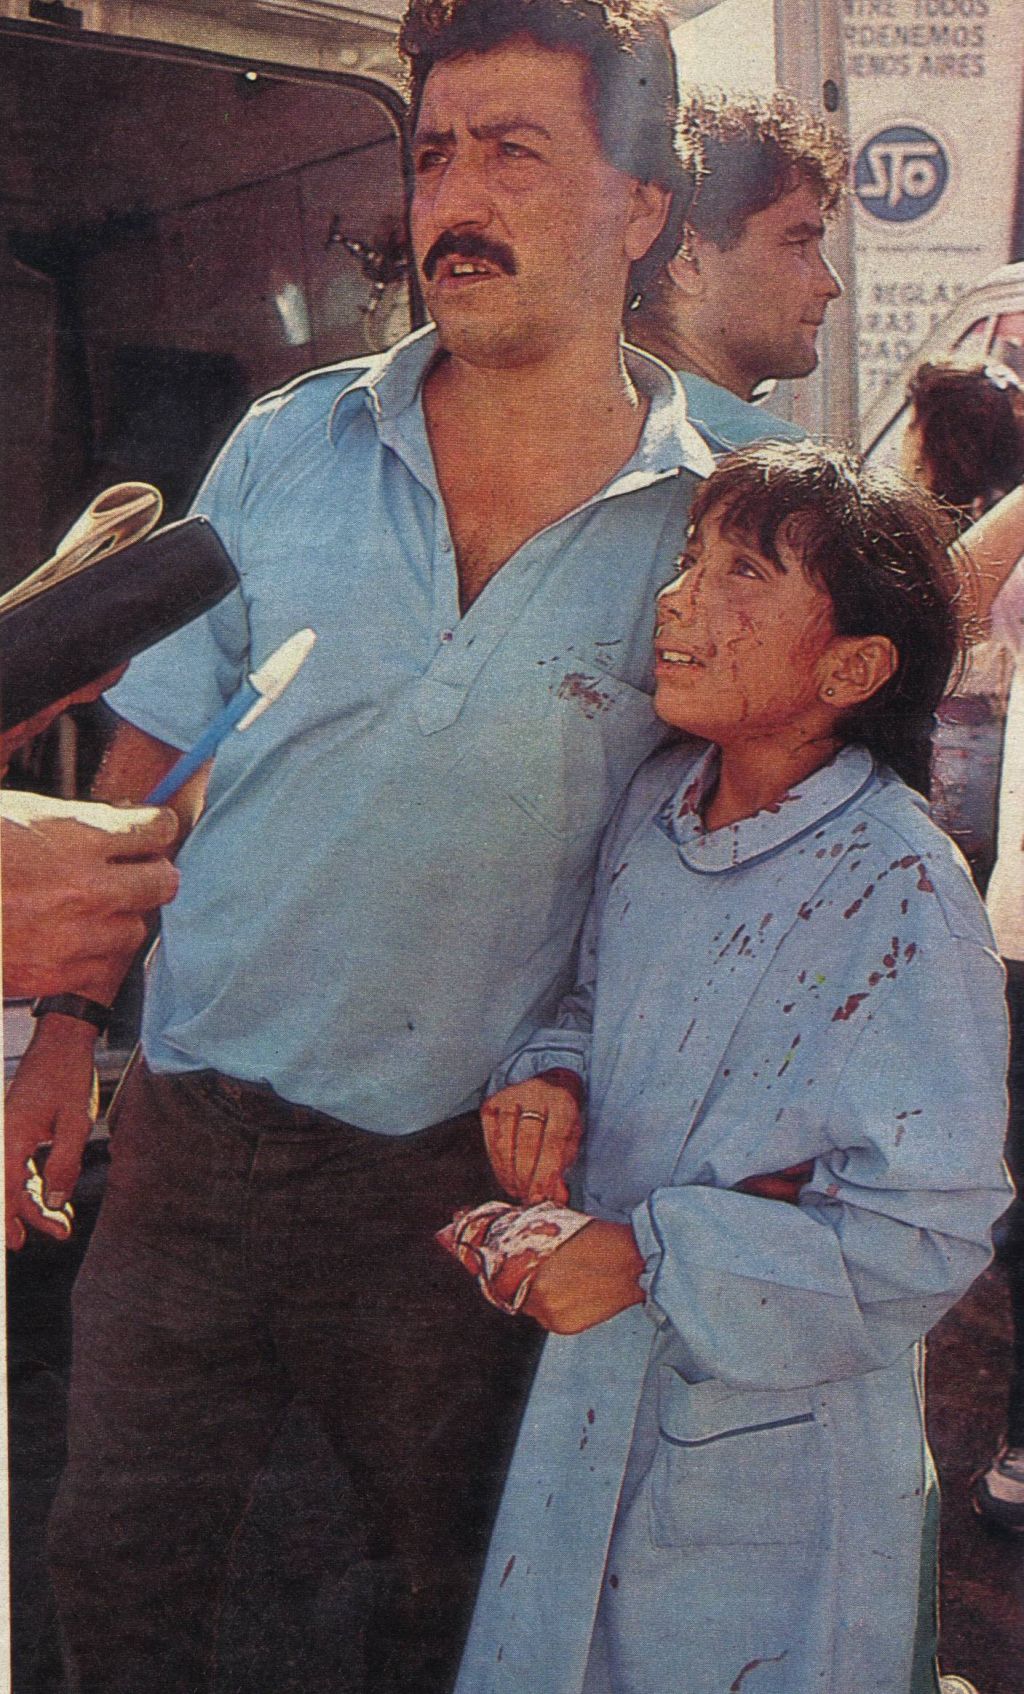 Una niña con la túnica ensangrentada, junto a un hombre, llorando. Atentado Embajada de Israel en Buenos Aires.